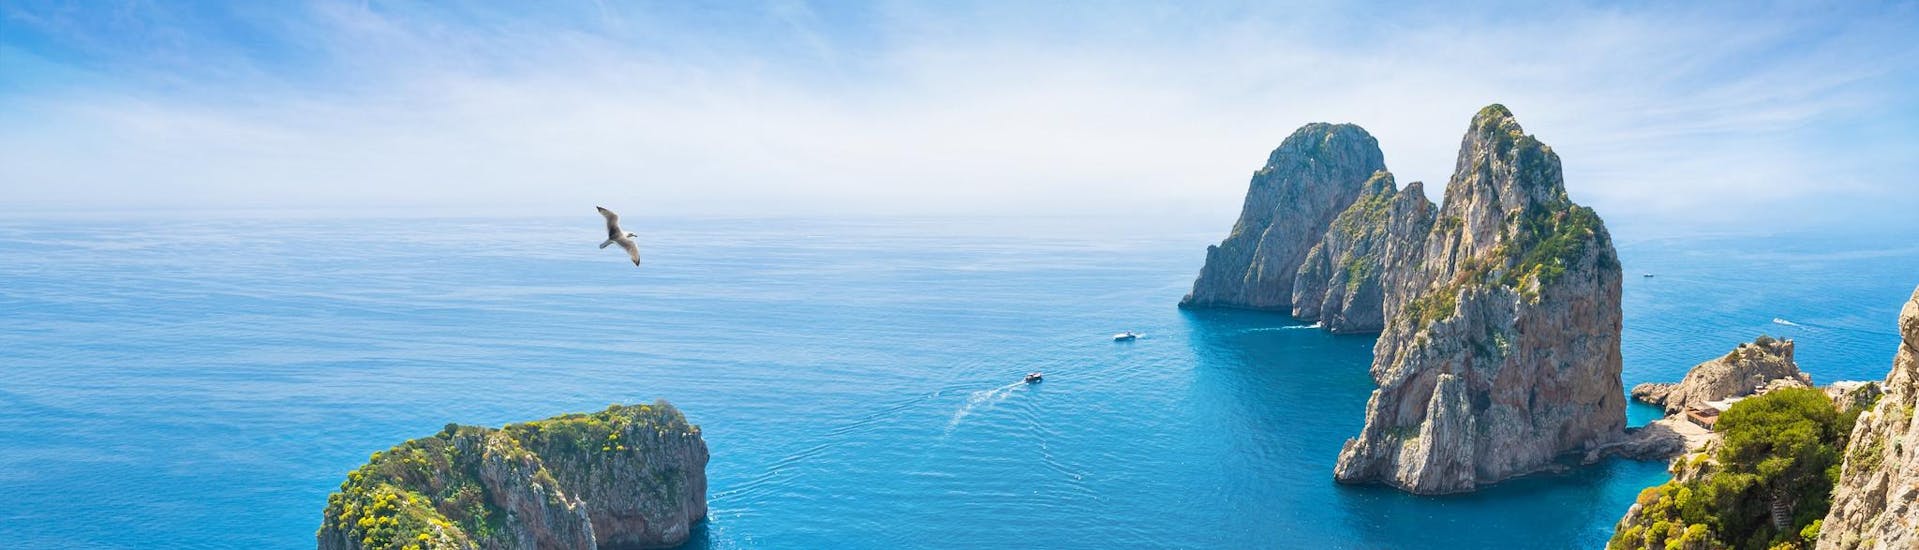 Luchtfoto van boten tijdens een boottocht naar Capri.